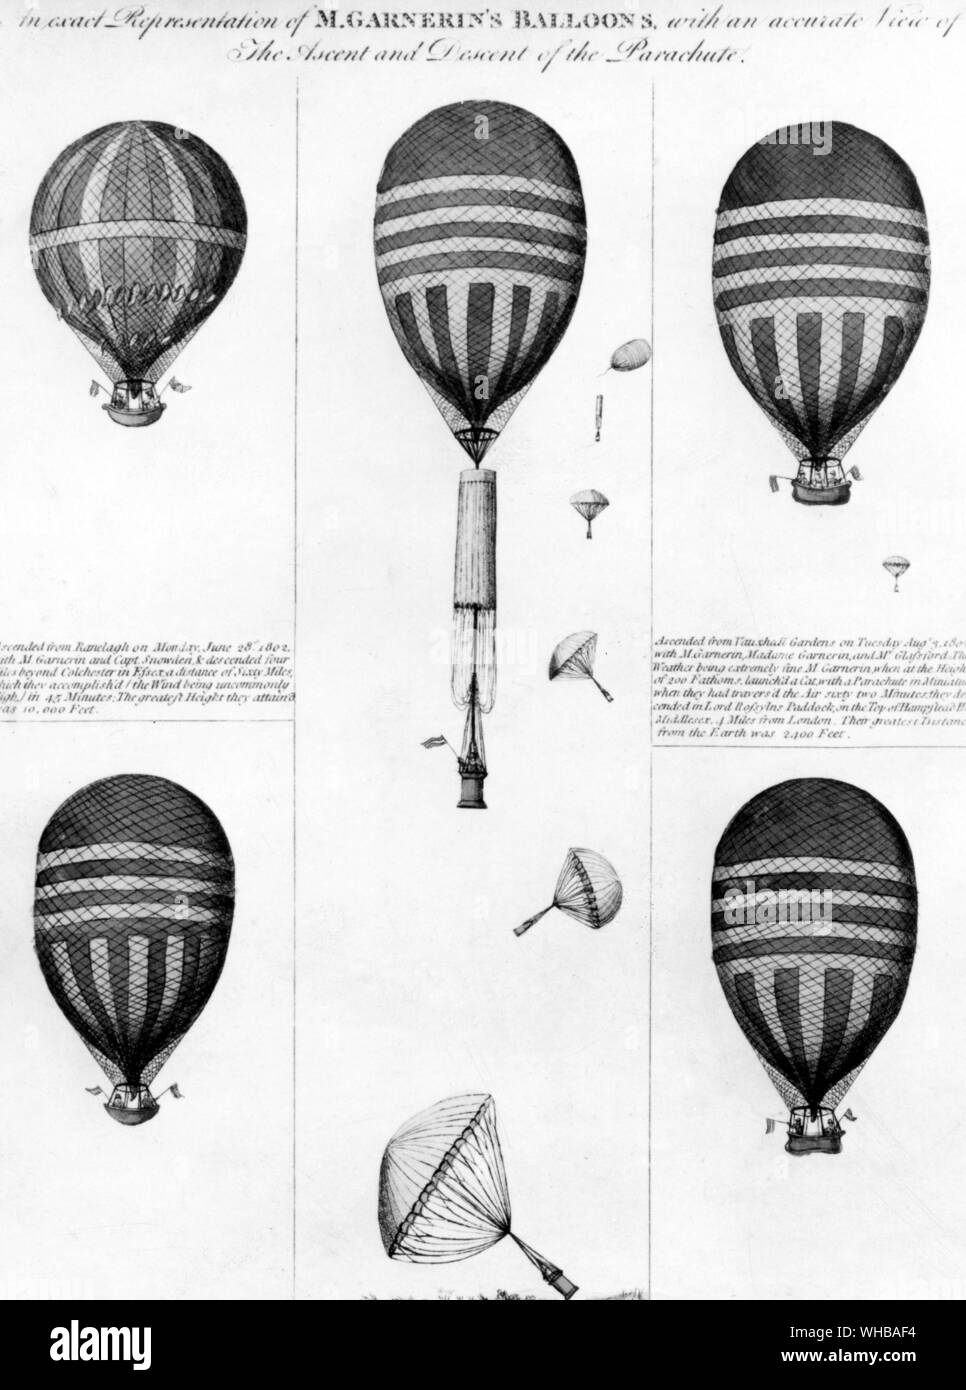 London: Eine genaue Darstellung der M Garnerin des Ballons mit einem genauen Blick auf den Aufstieg und Abstieg der Fallschirm, farbige laquatint, nach G Fuchs, durch H schaue. 1802 Stockfoto